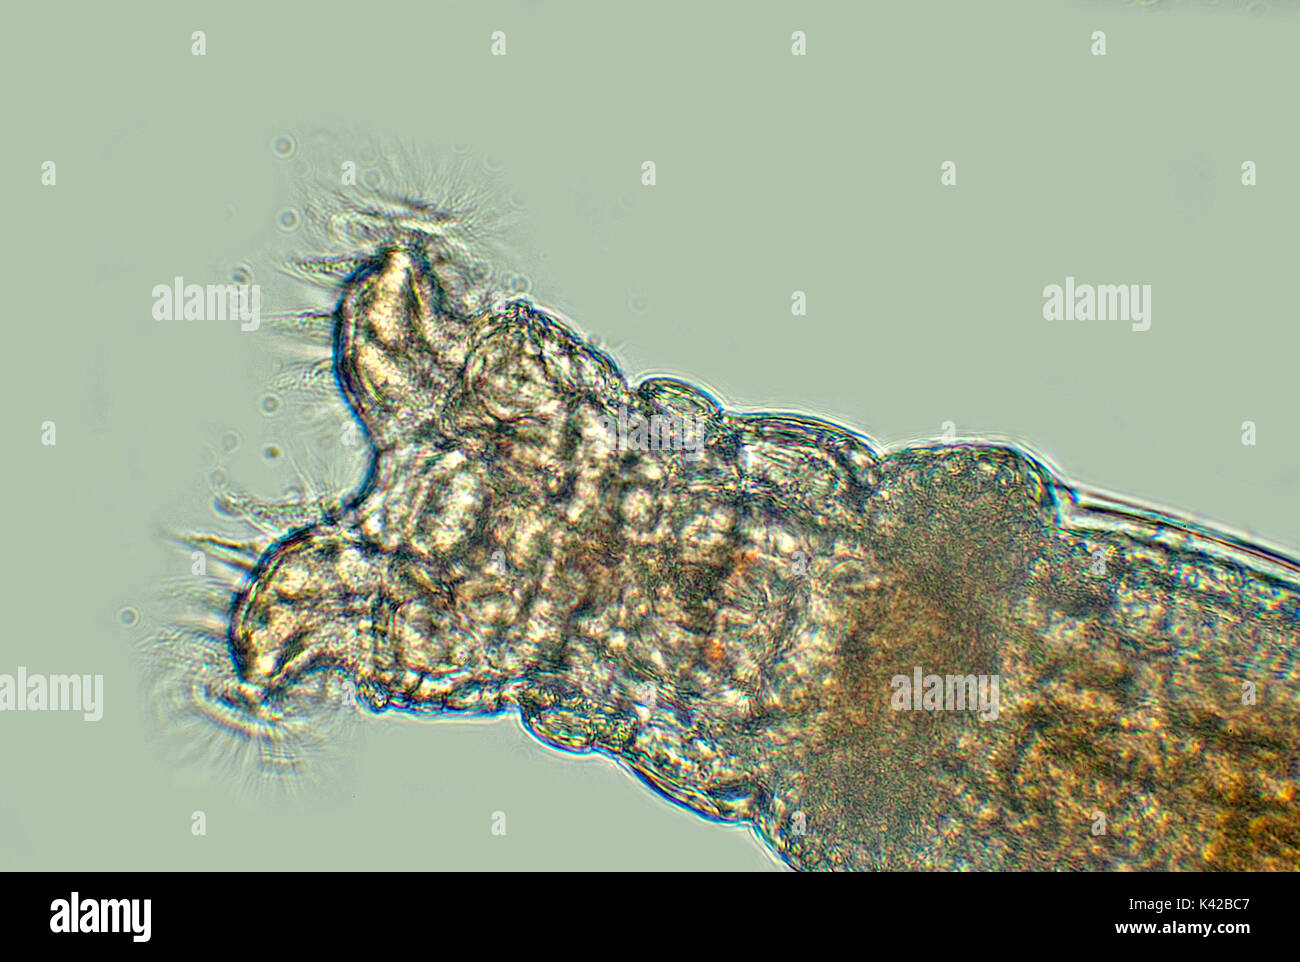 Collotheca rotifère, se nourrissant de bactéries avec cilla, une mâchoire-comme le dispositif pour le broyage des particules de nourriture, les rotifères bdelloïdes trouvés dans bain d'oiseaux Banque D'Images